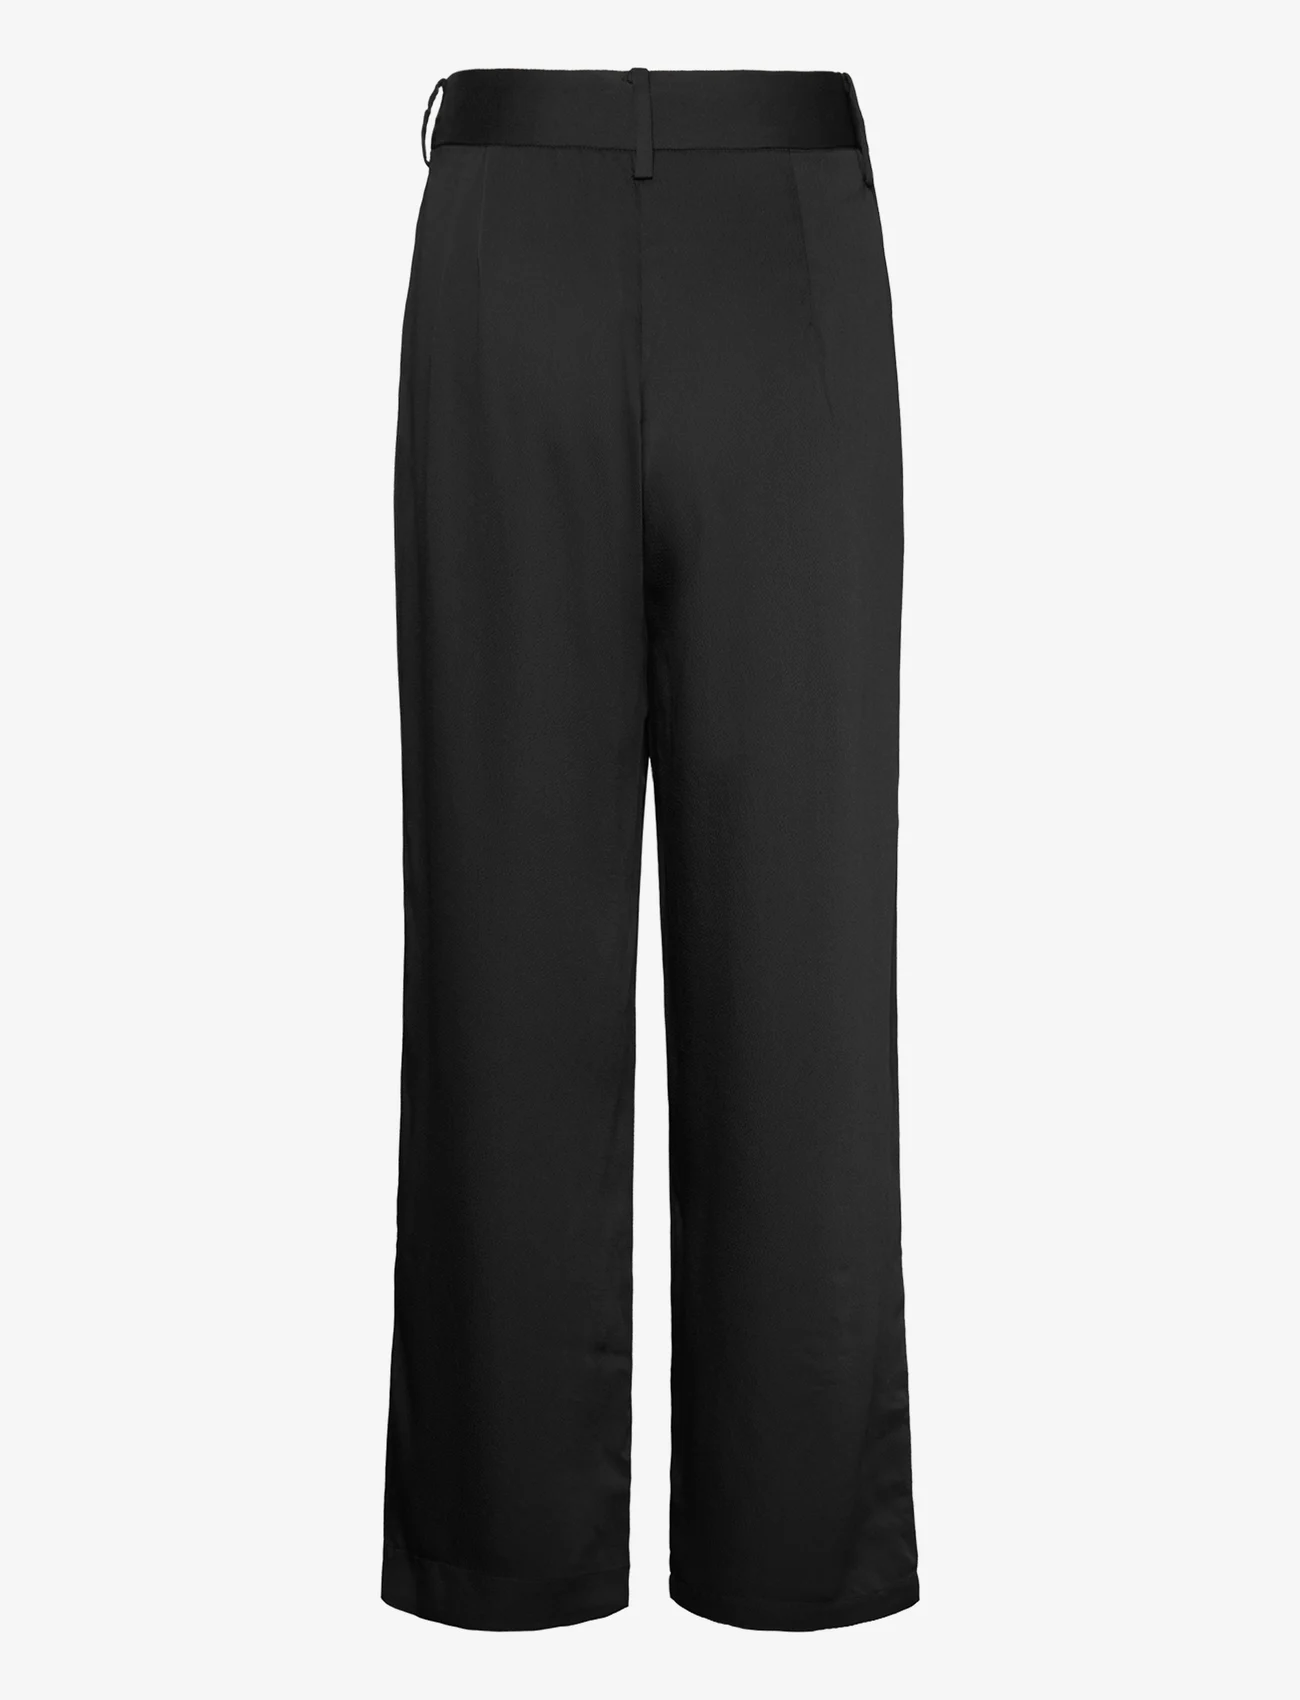 Bruuns Bazaar - CedarsBBCella pants - uitlopende broeken - black - 1